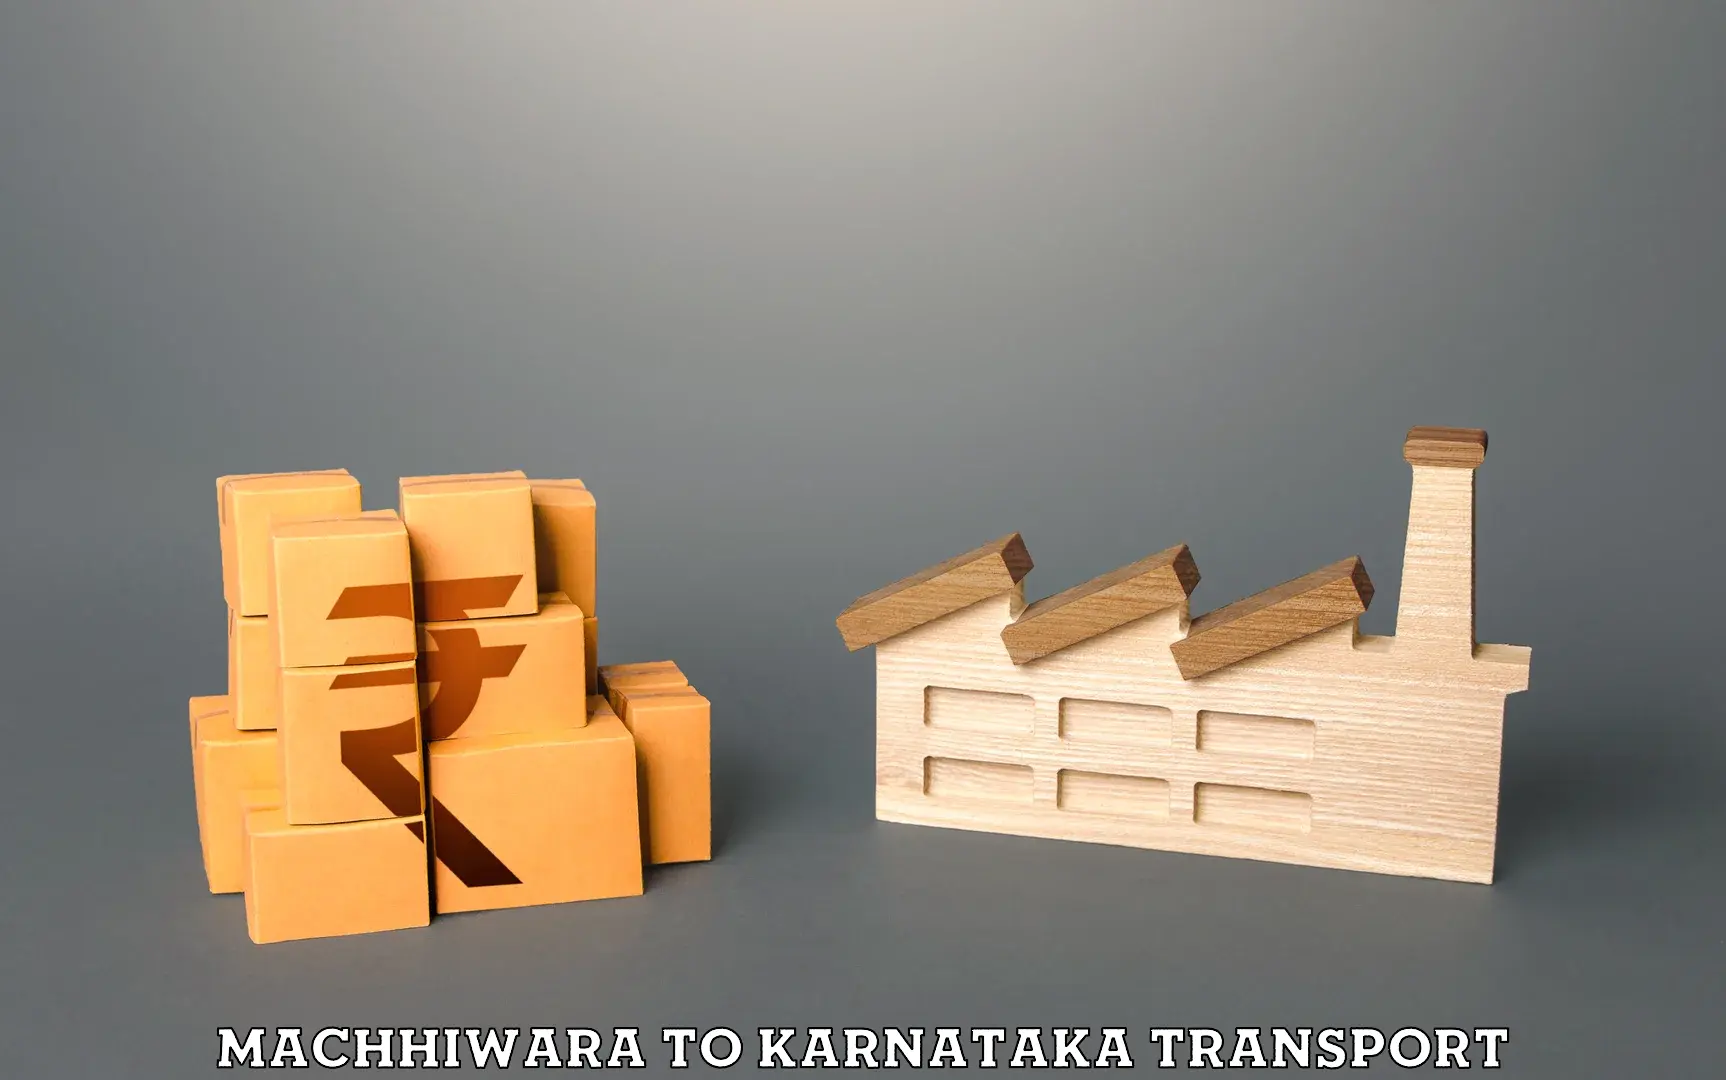 Online transport service Machhiwara to Kalasa